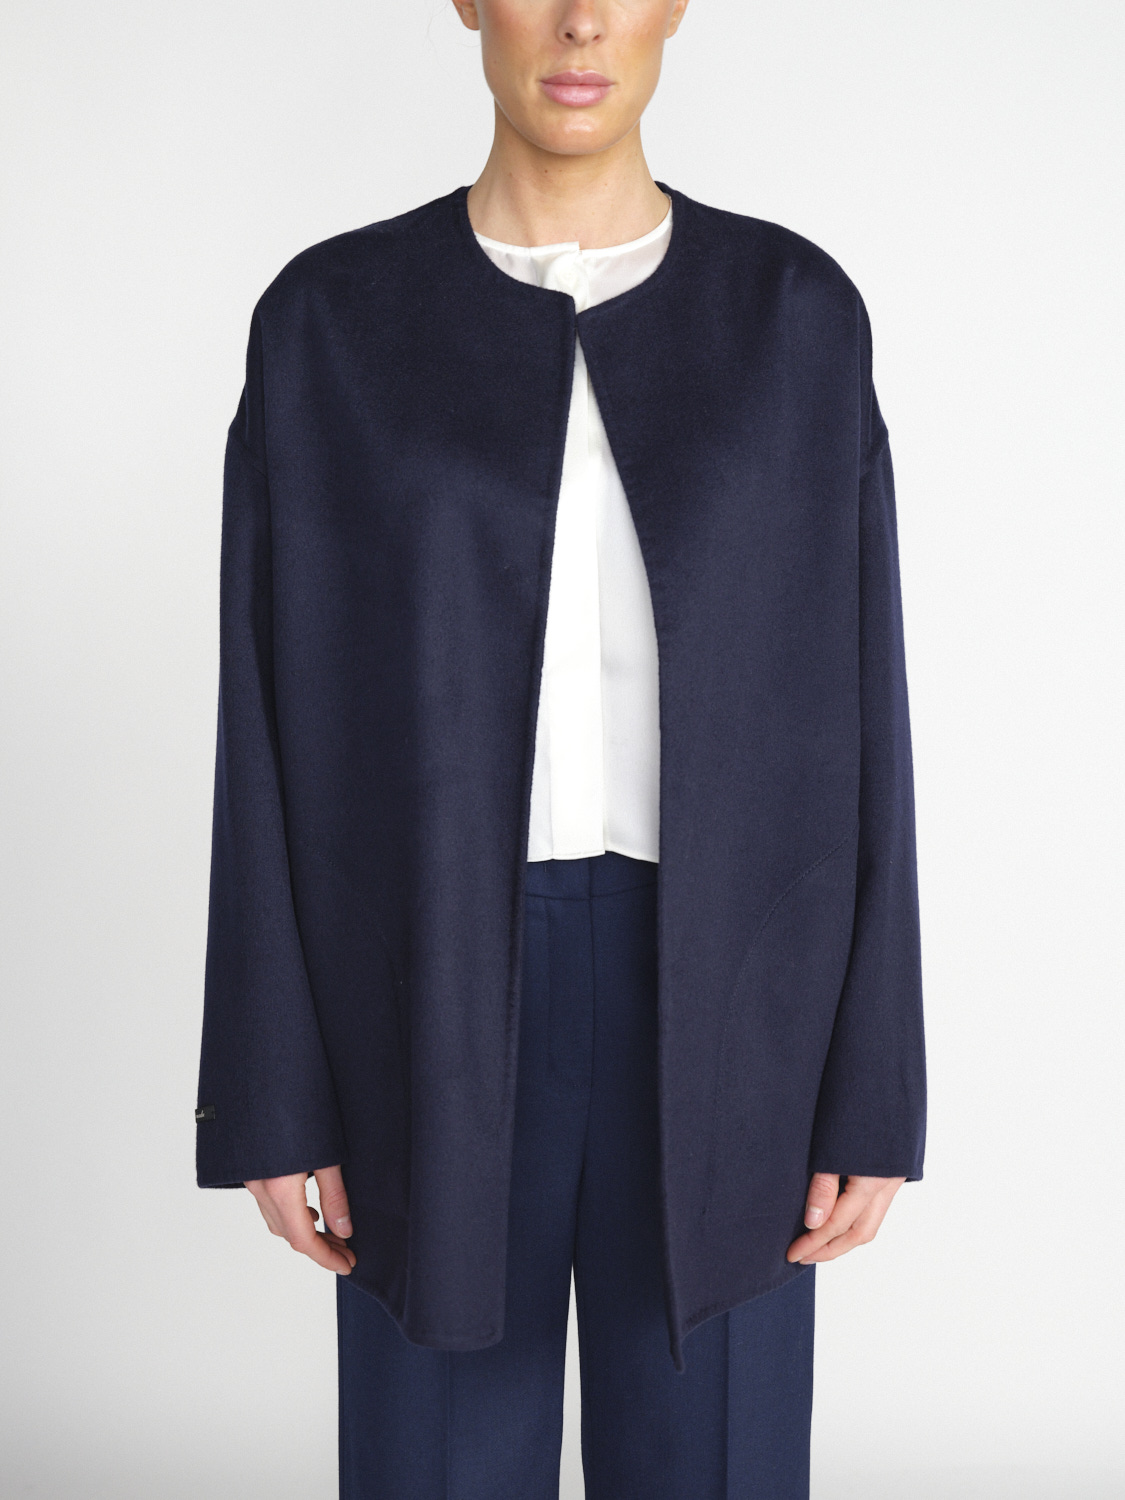 Lightweight asymmetric jacket made of wool 